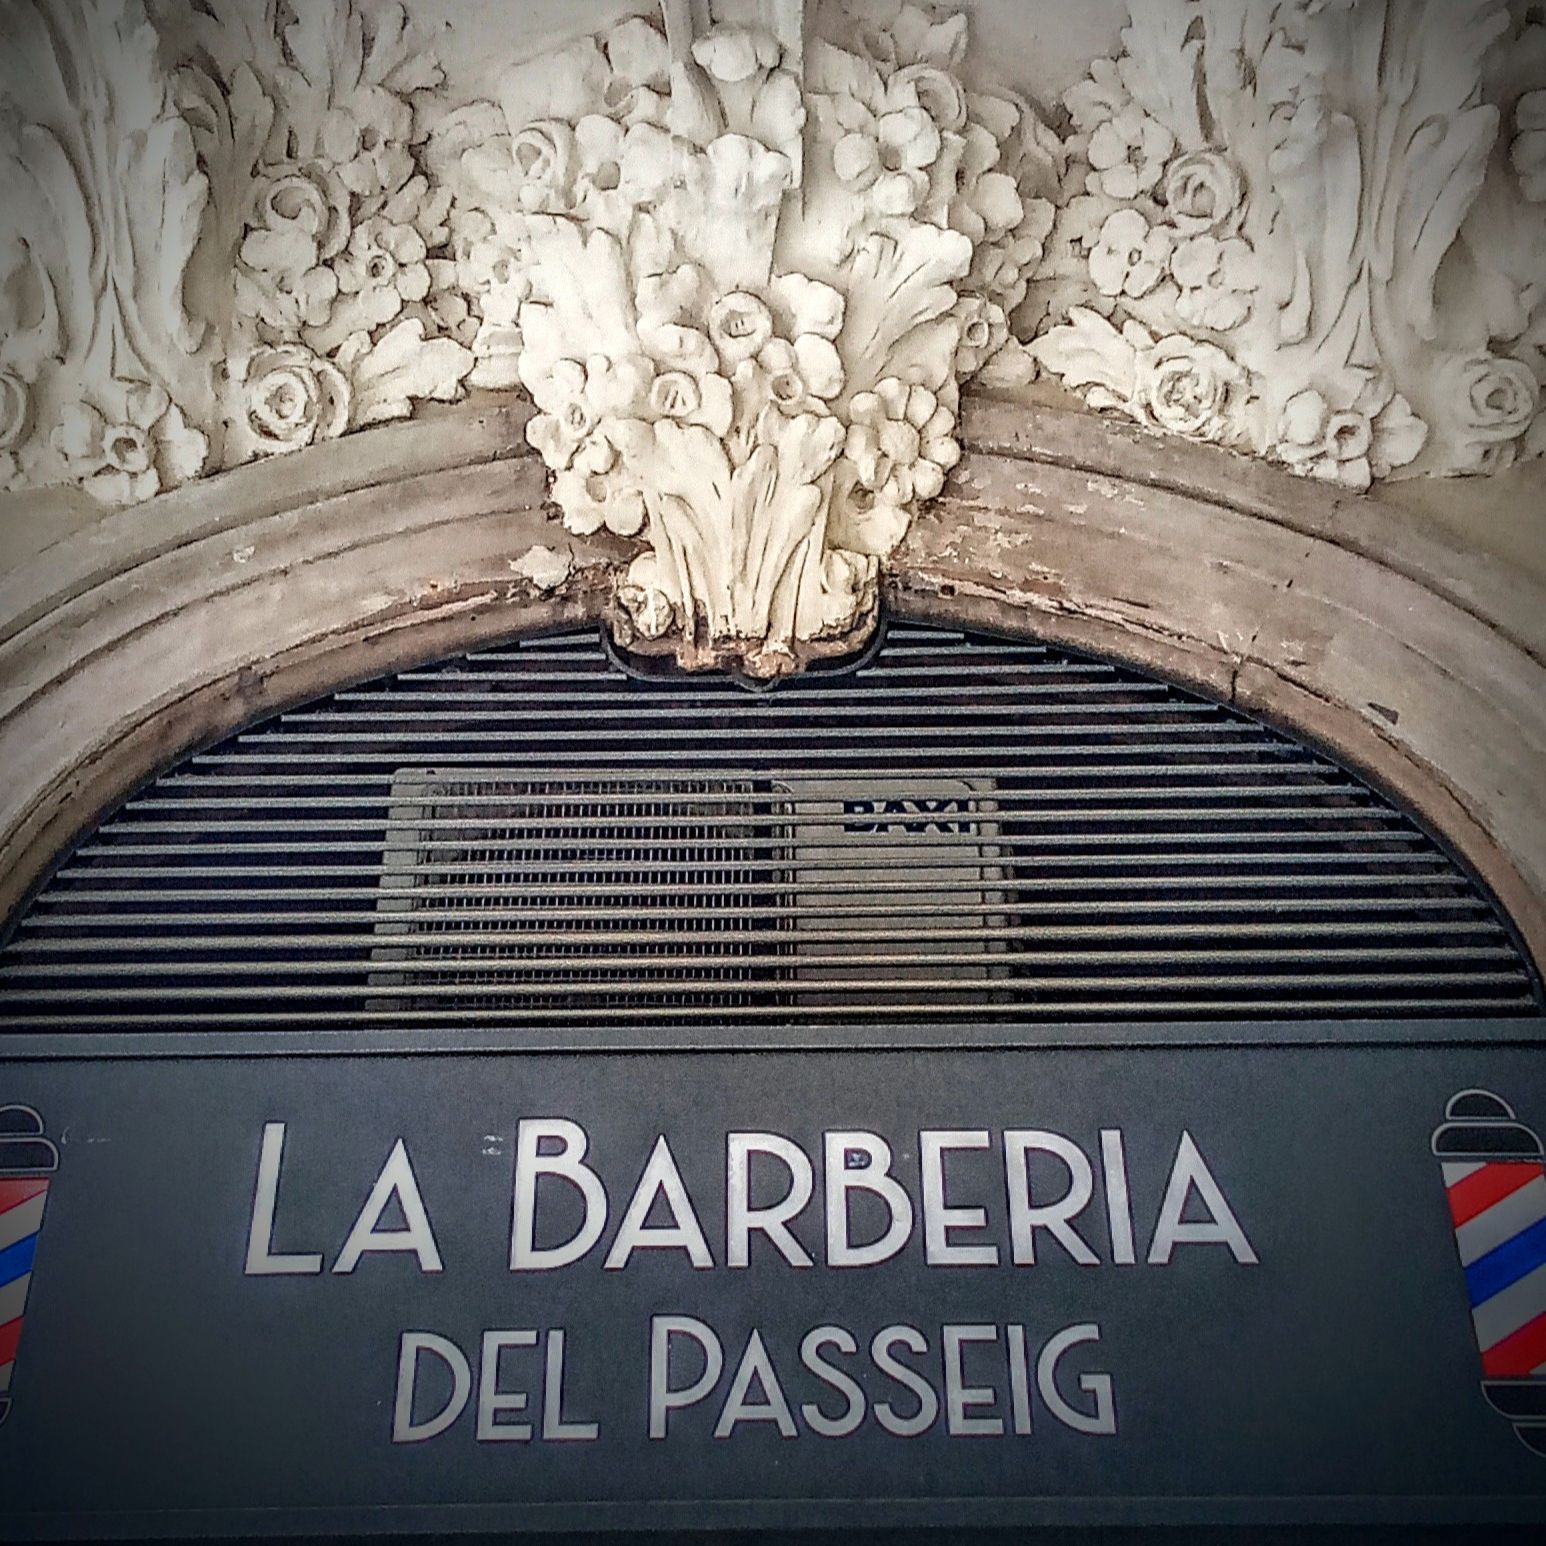 La barbería del passeig, Passeig de Sant Joan, 51B, 08009, Barcelona